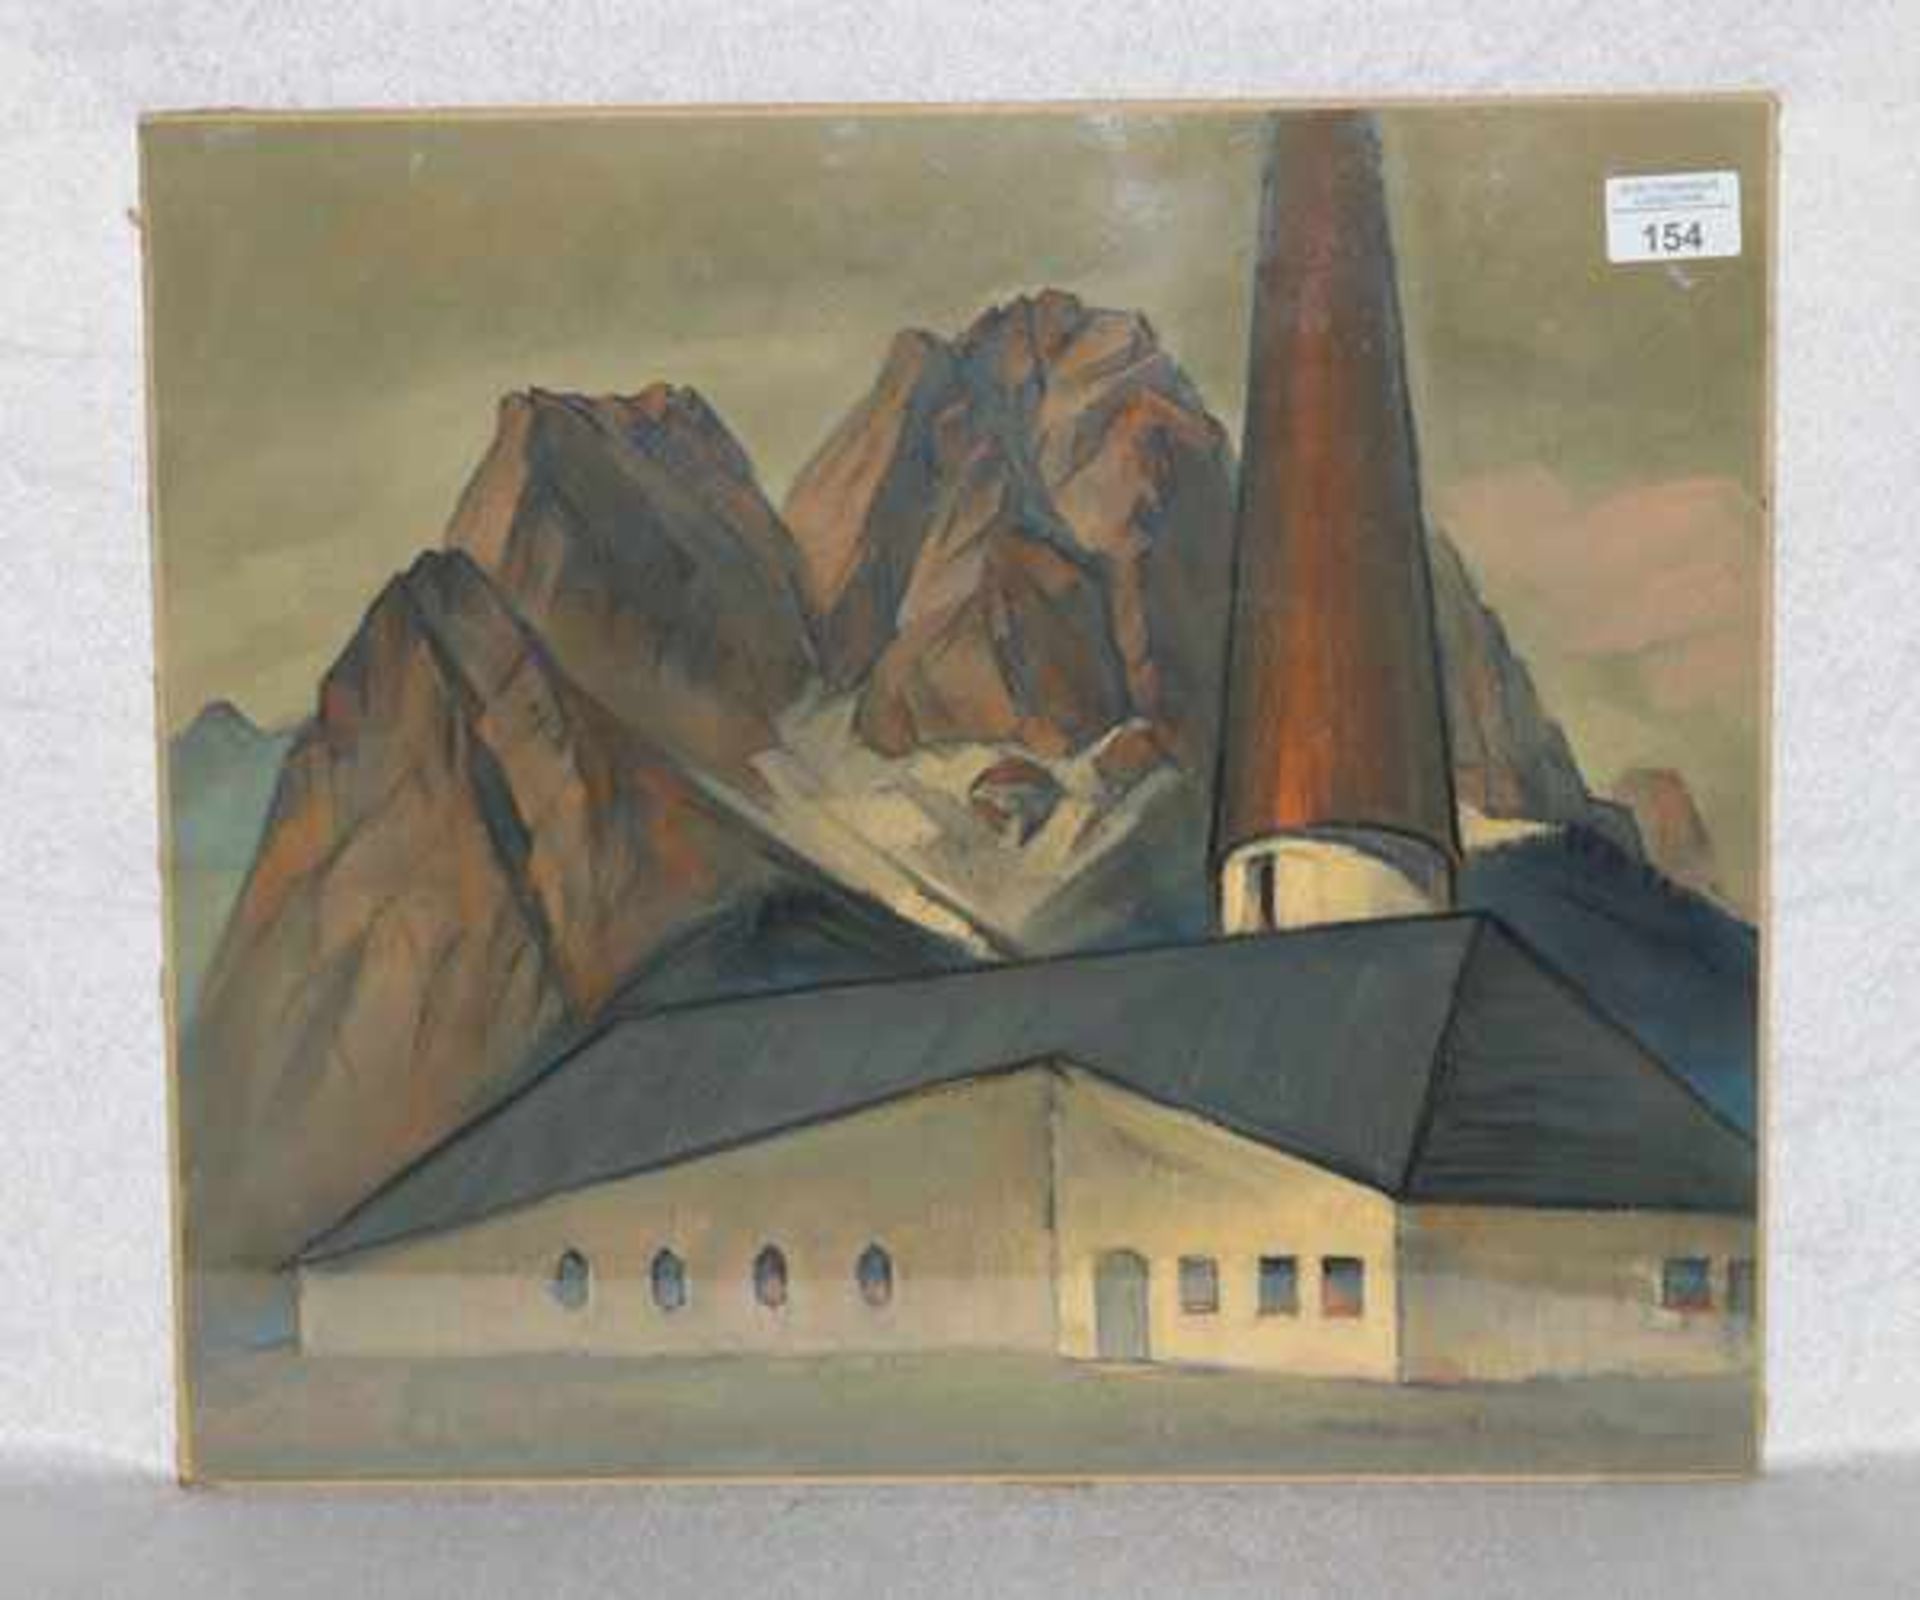 Gemälde Pastell 'Ev. Kirche in Grainau mit Waxensteinen', signiert Oskar Schultz, * 11.5.1892 Warwen